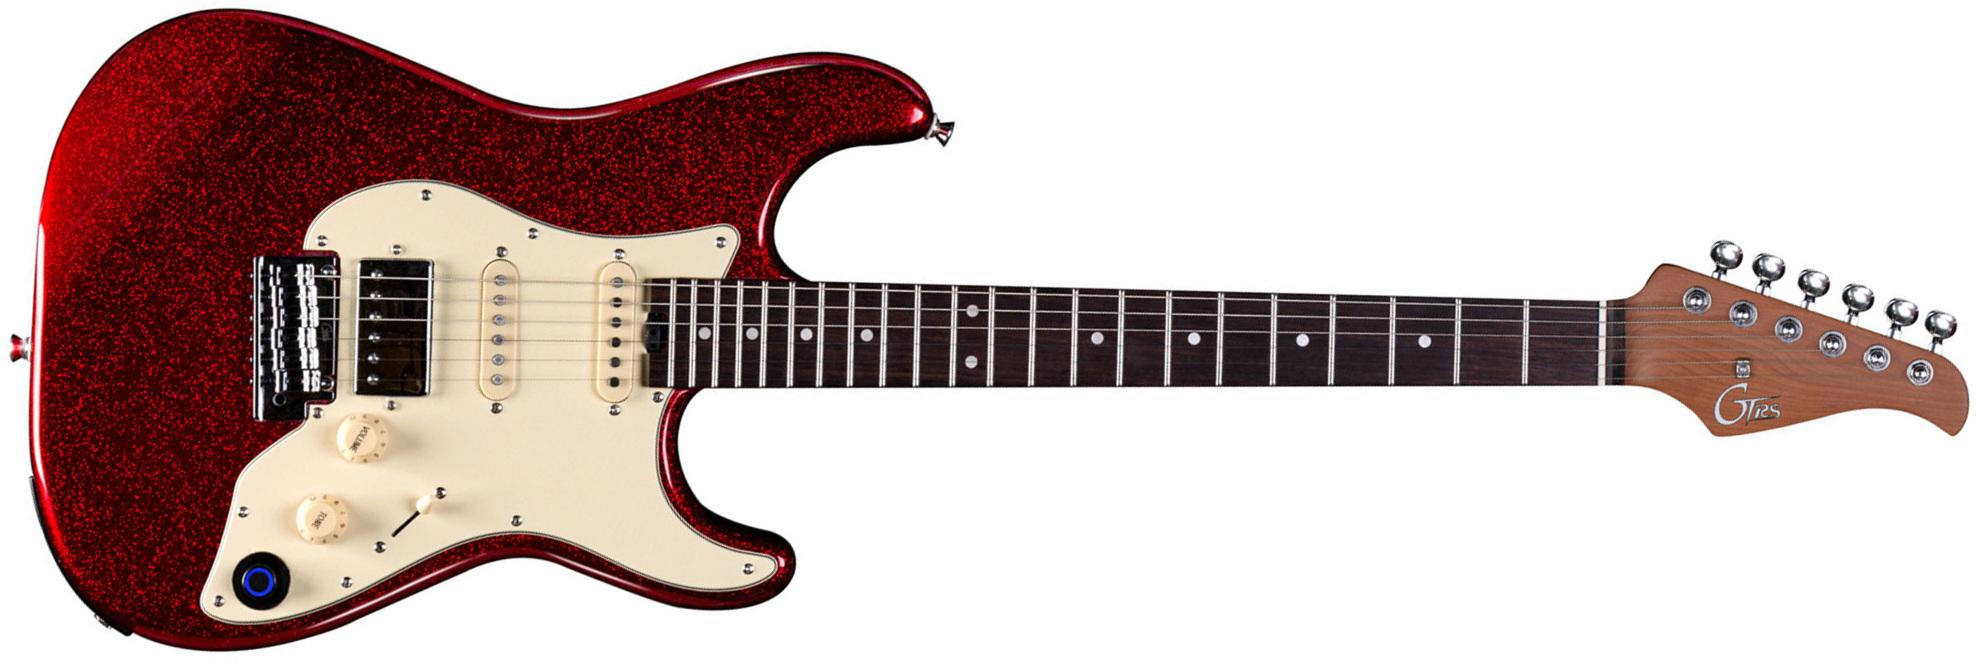 Mooer Gtrs S800 Hss Trem Rw - Metal Red - Guitare Électrique ModÉlisation & Midi - Main picture